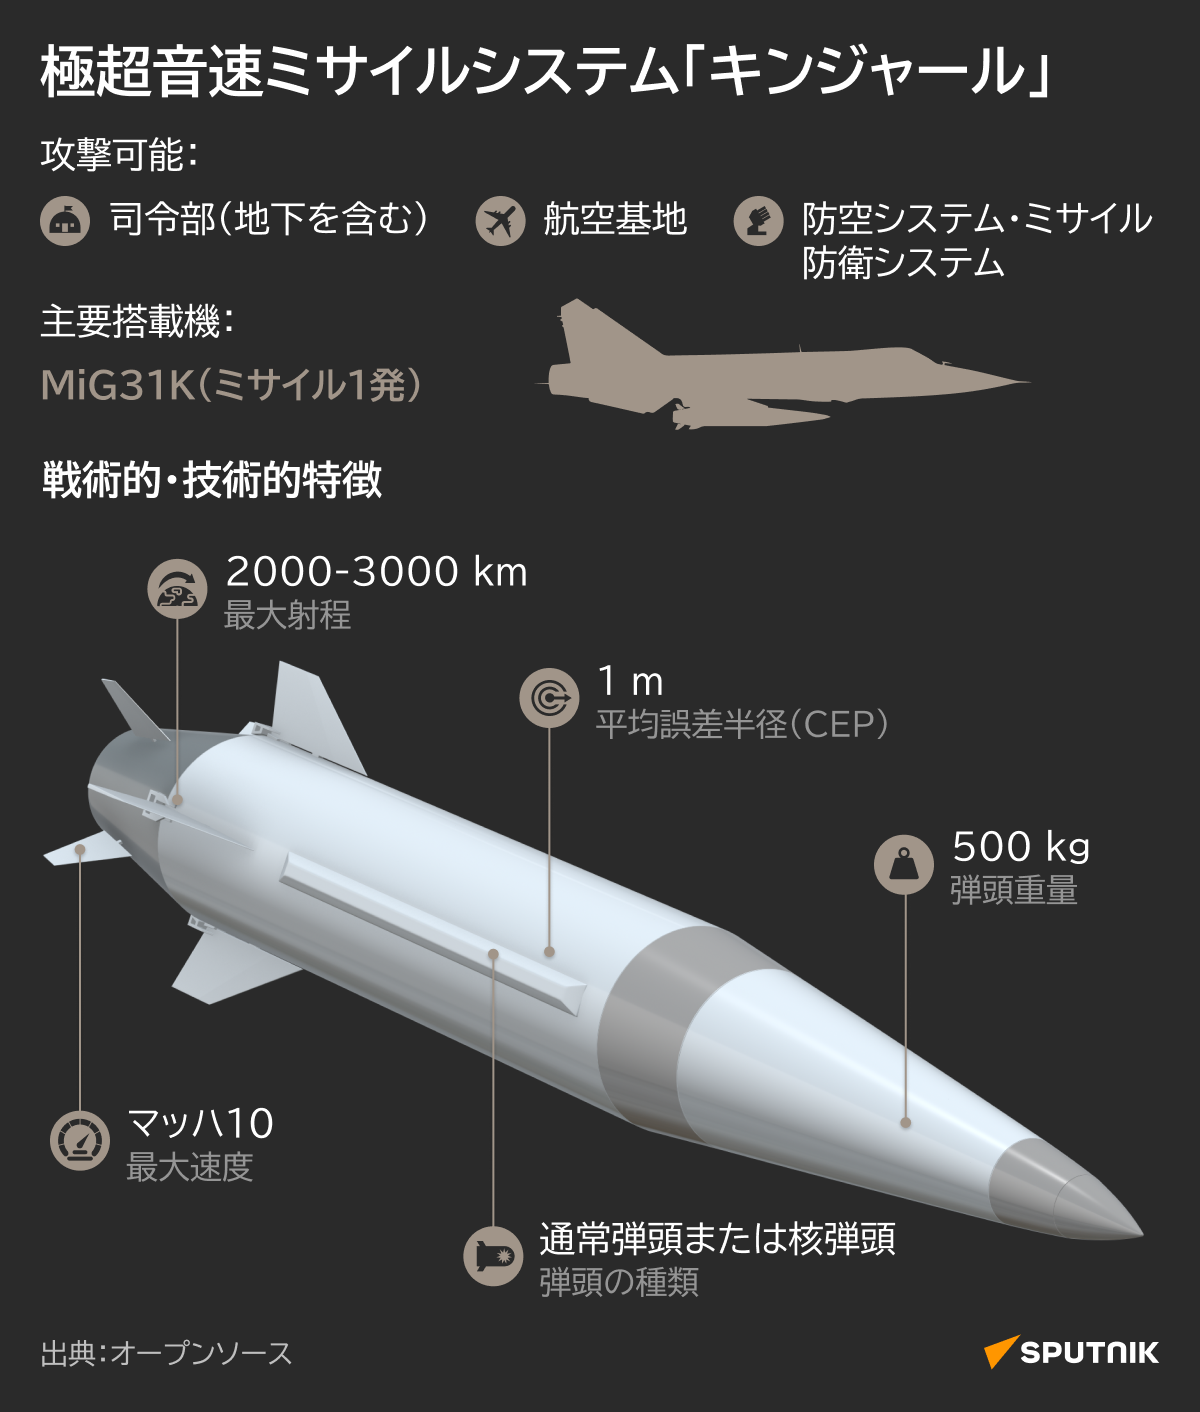 極超音速ミサイルシステム「キンジャール」 - Sputnik 日本